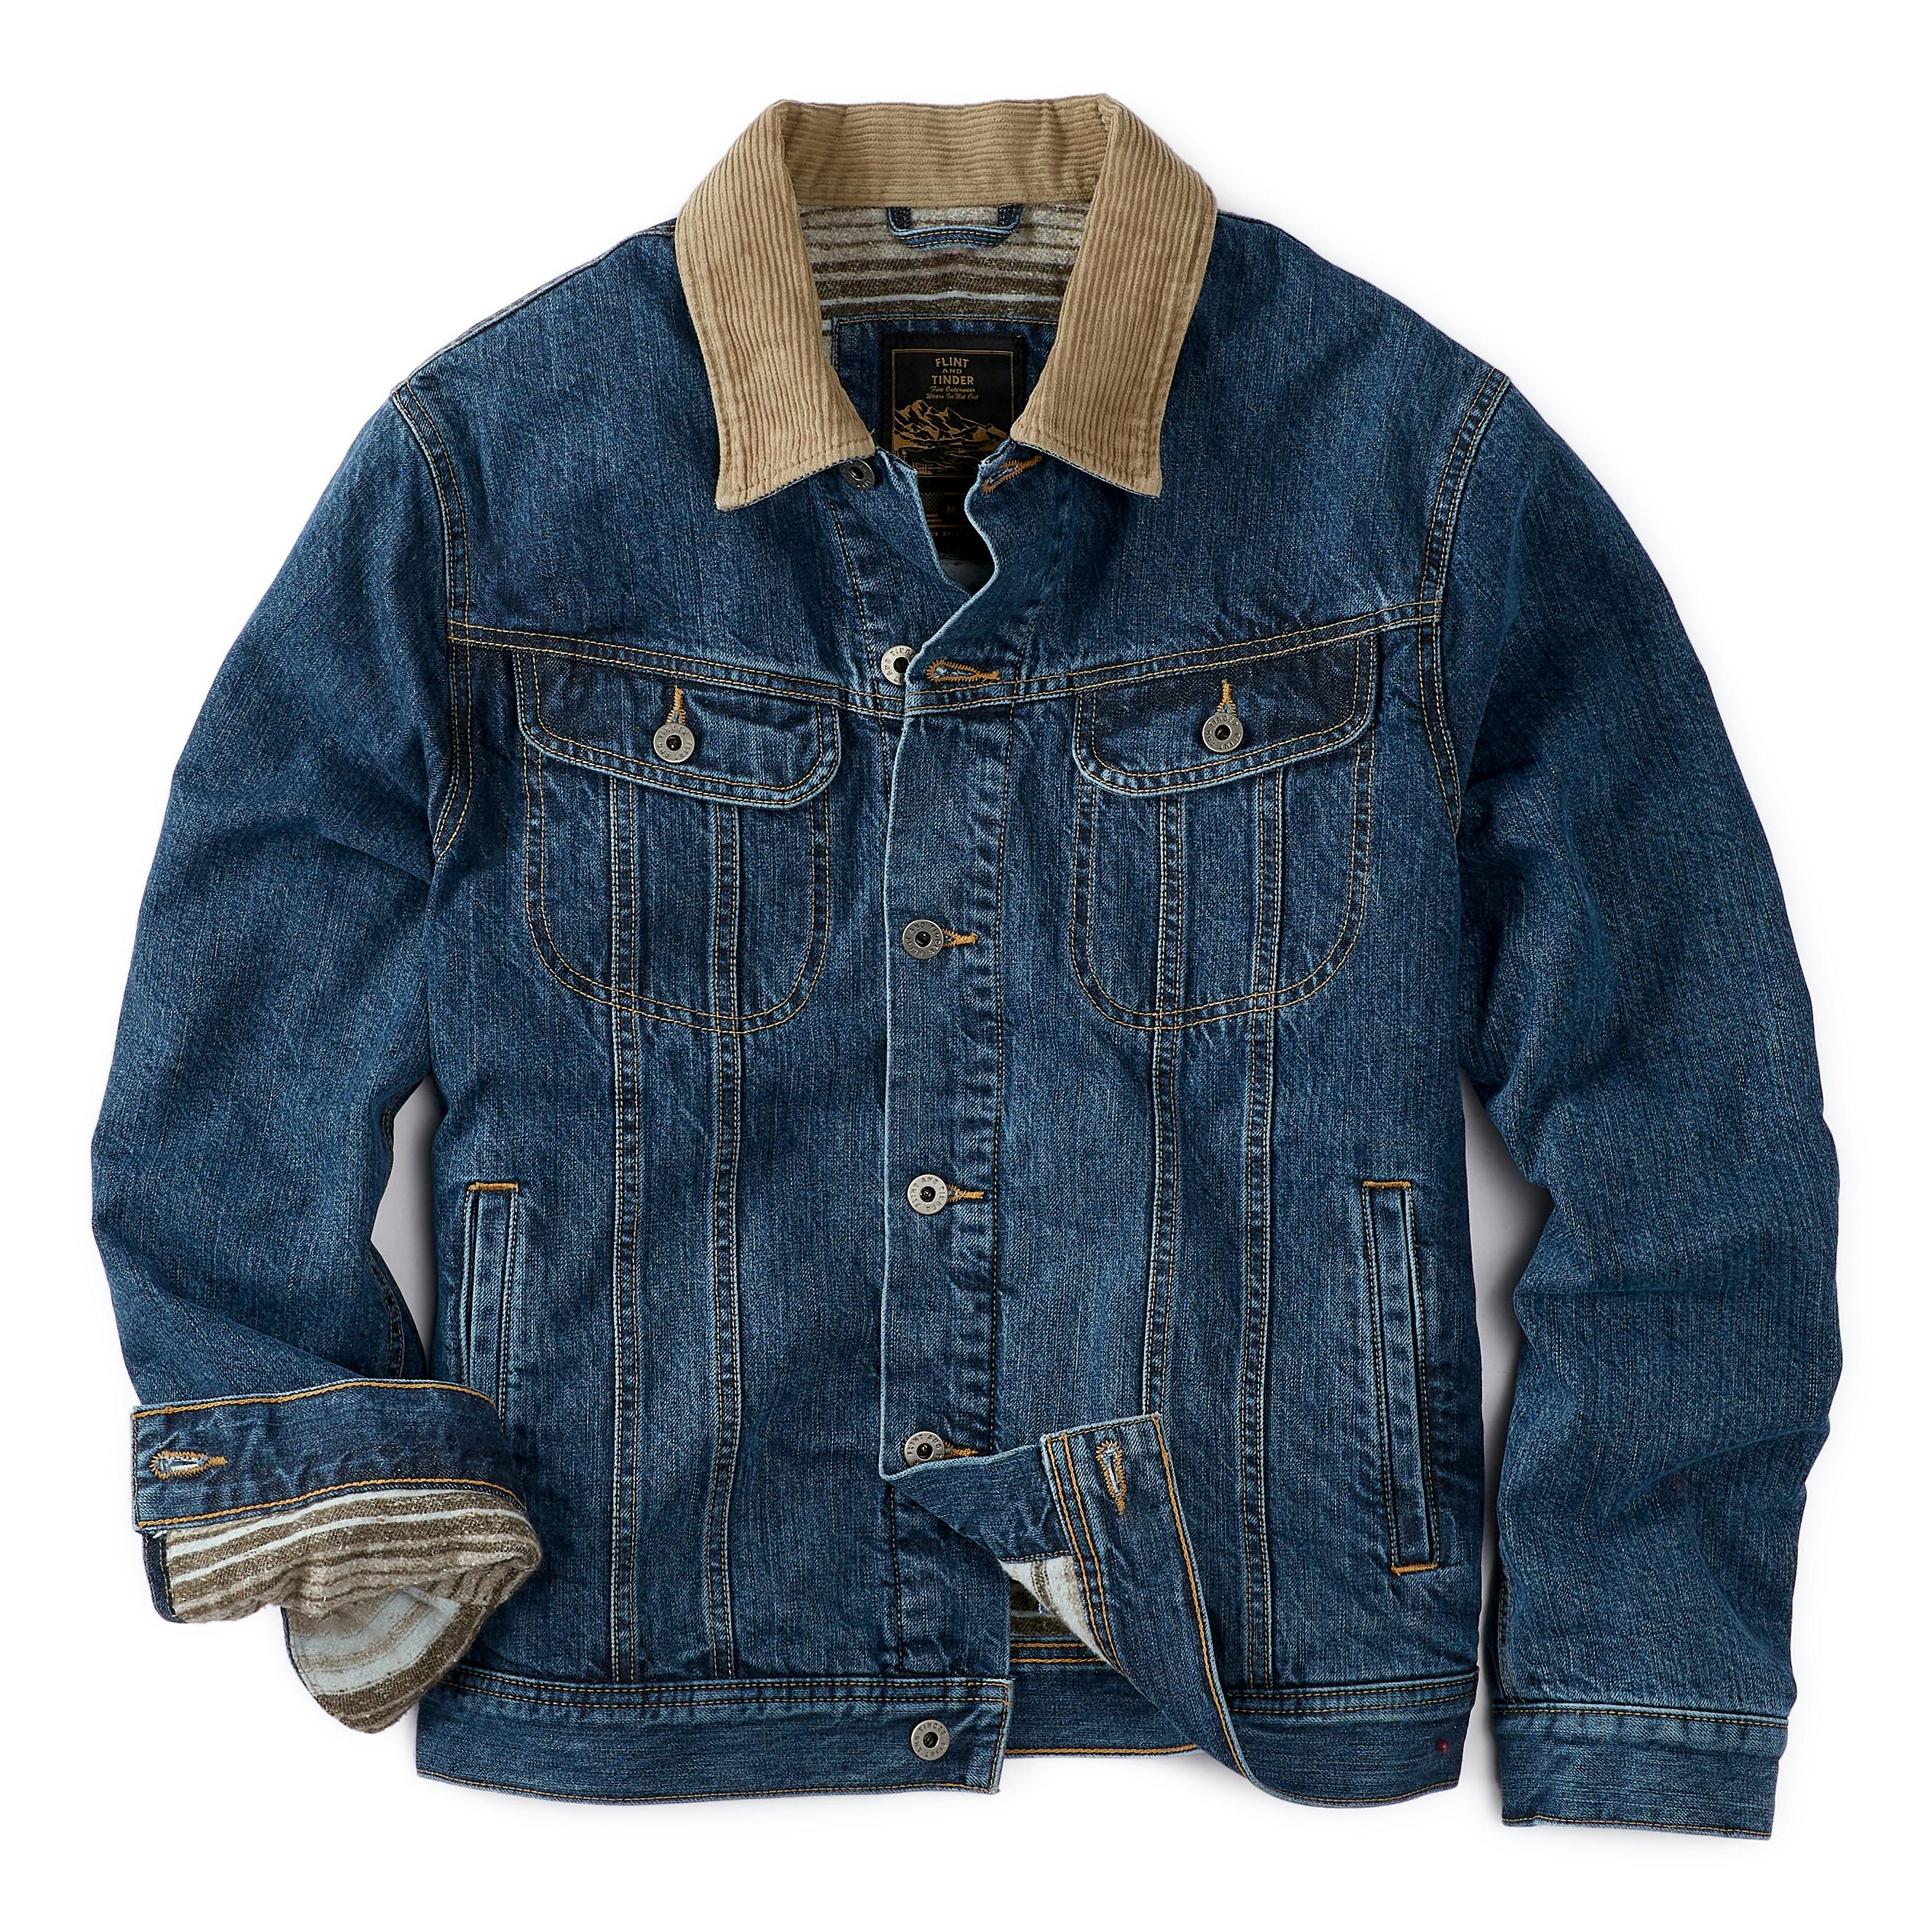 Flannel-Lined Denim Trucker Jacket